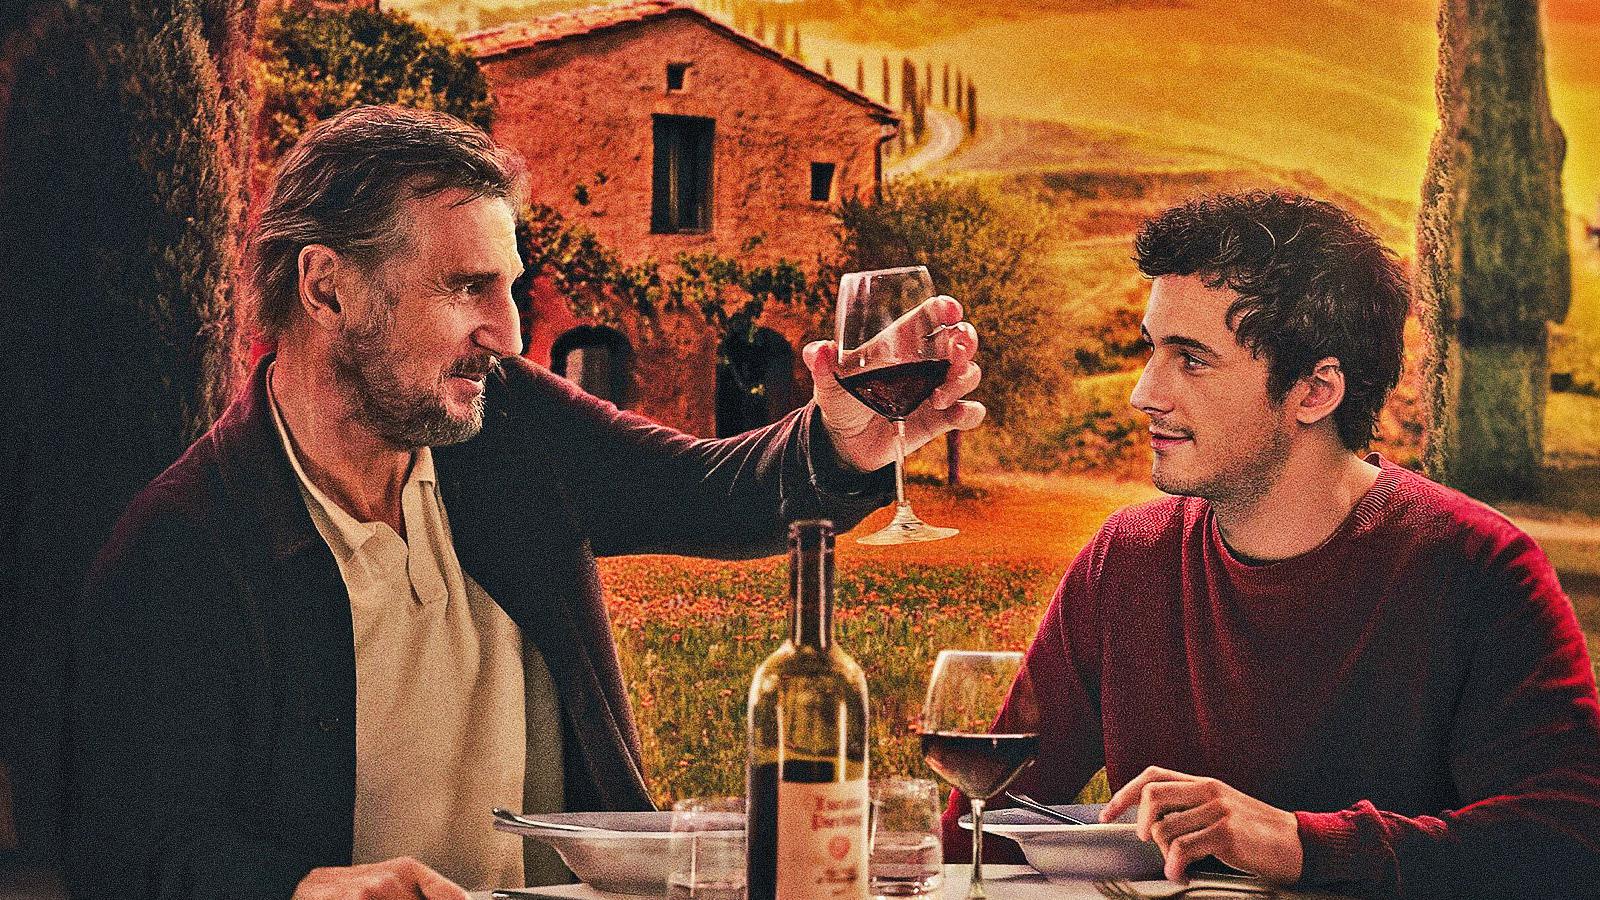 Made in Italy - Una casa per ritrovarsi, la recensione: Liam Neeson nelle campagne toscane